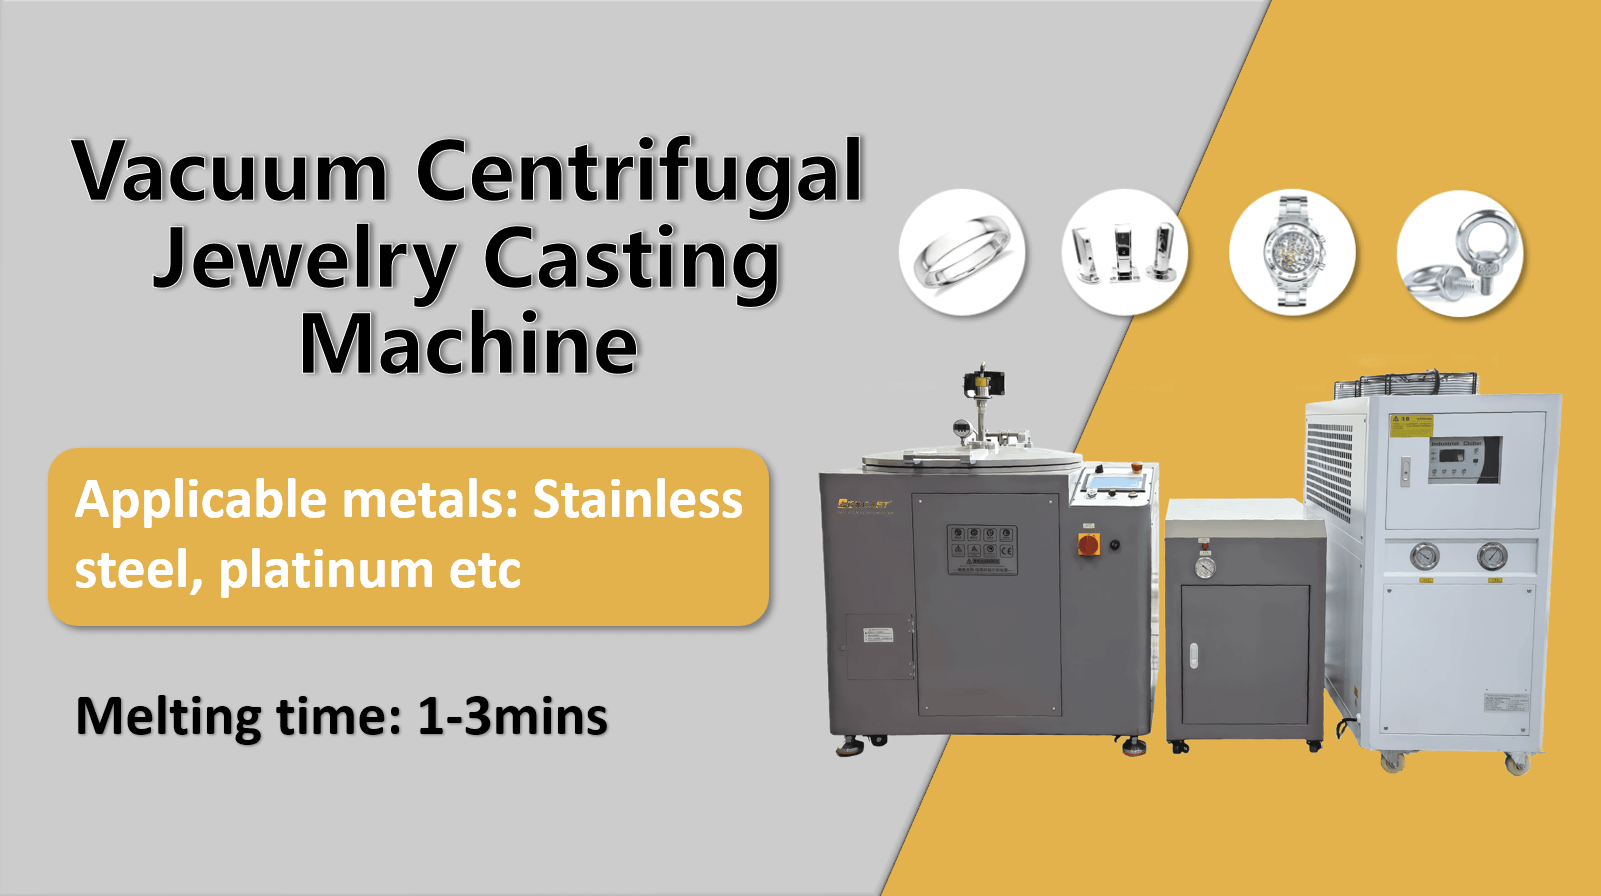 300g Vacuum centrifugal Jewelry casting machine